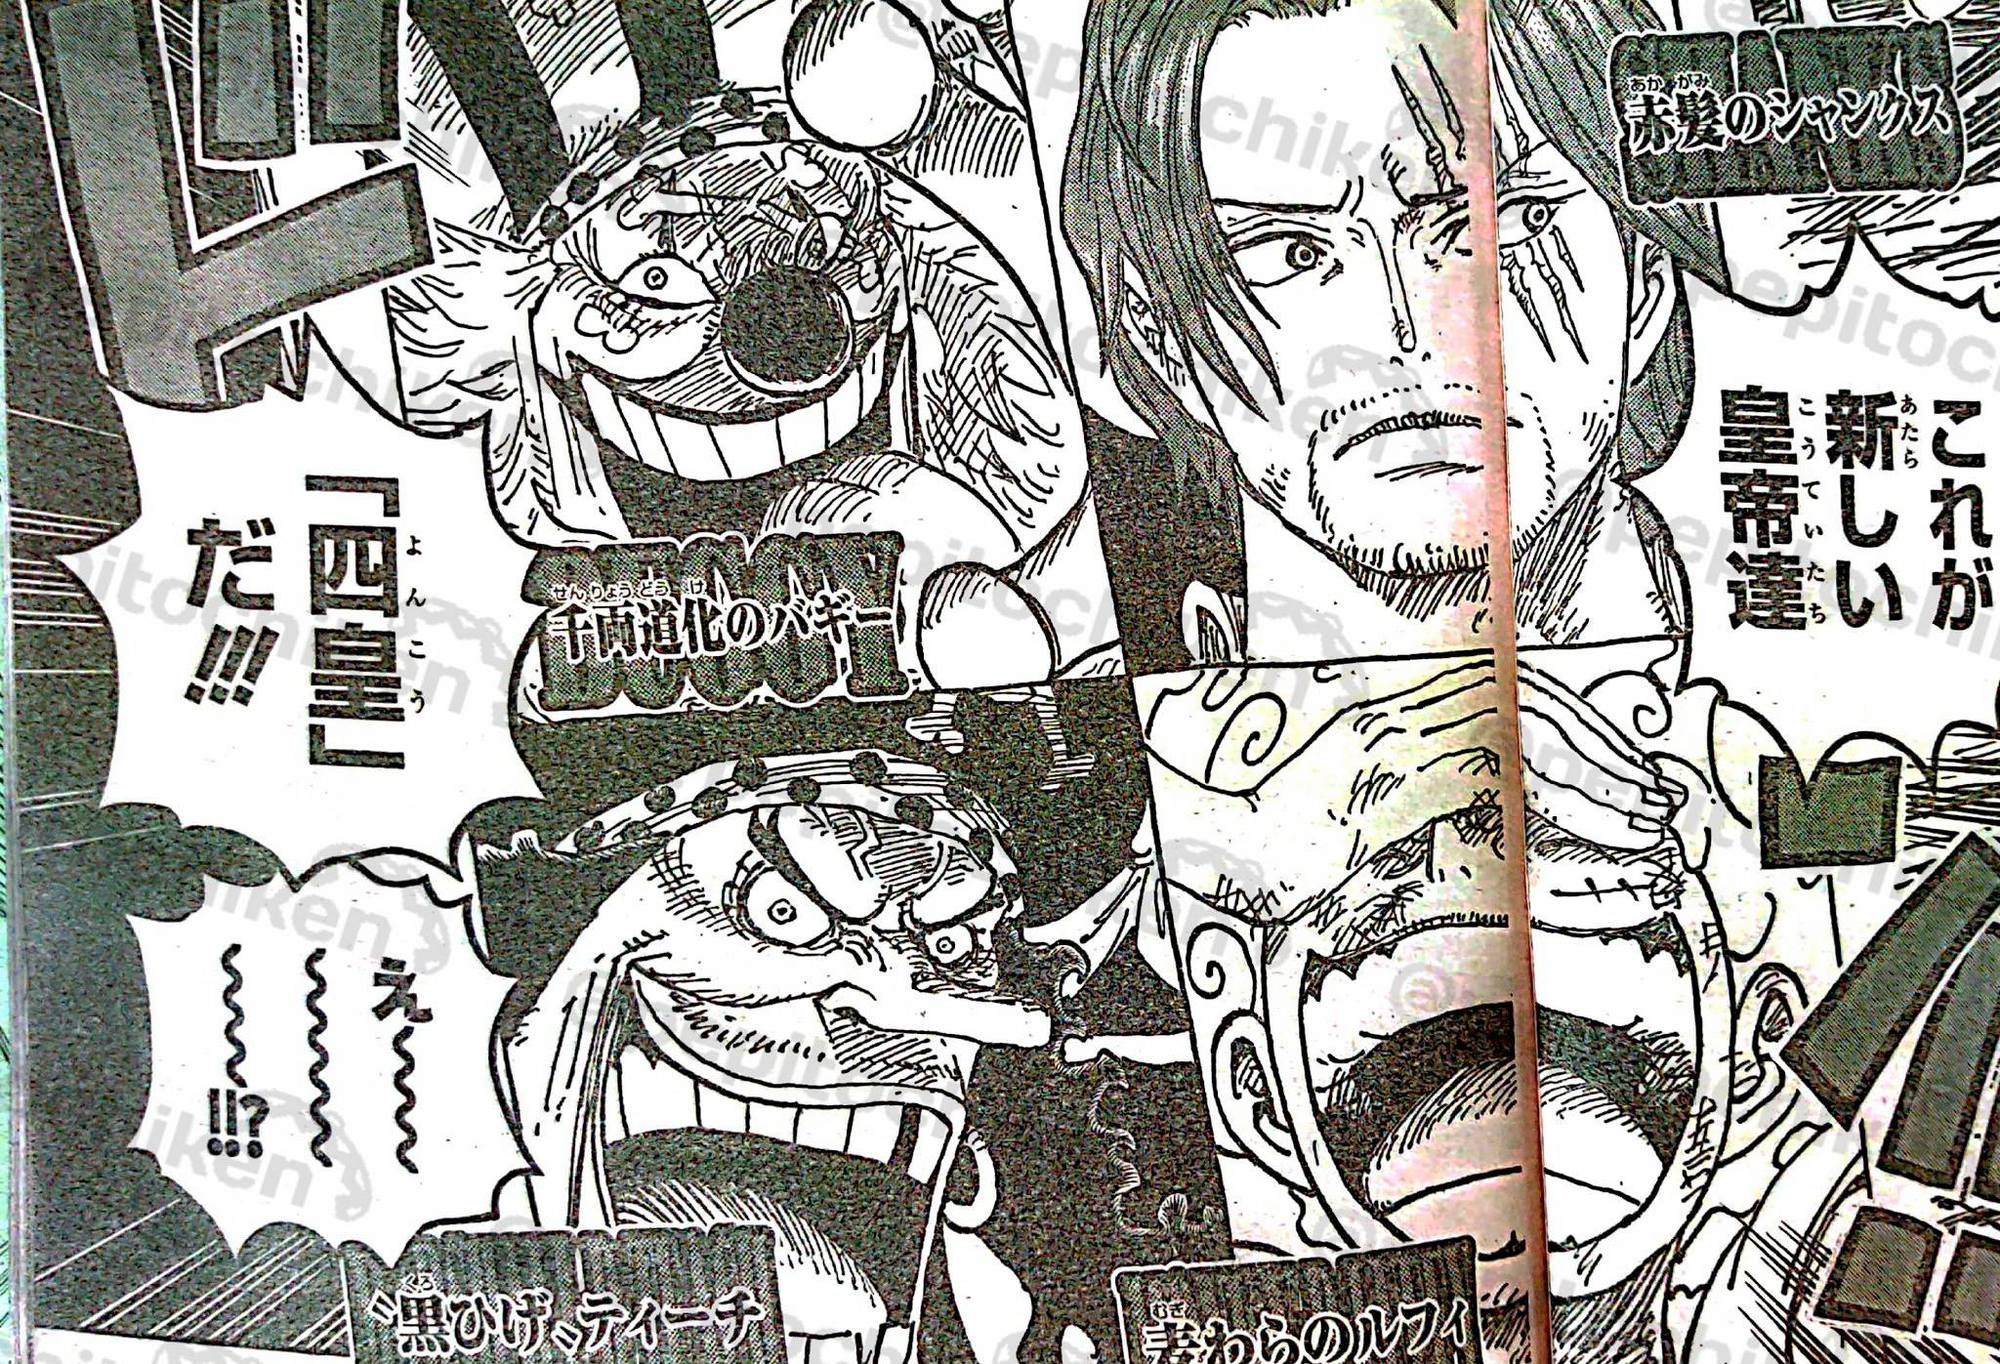 Bạn đã được nghe chưa? Có thêm hai Tứ Hoàng mới xuất hiện trong One Piece đấy! Họ là những nhân vật cực kỳ hấp dẫn và sẽ đem đến cho bạn nhiều giây phút hồi hộp và cực kỳ thú vị. Đừng bỏ lỡ cơ hội chiêm ngưỡng hai Tứ Hoàng mới trong One Piece nào bạn nhé!